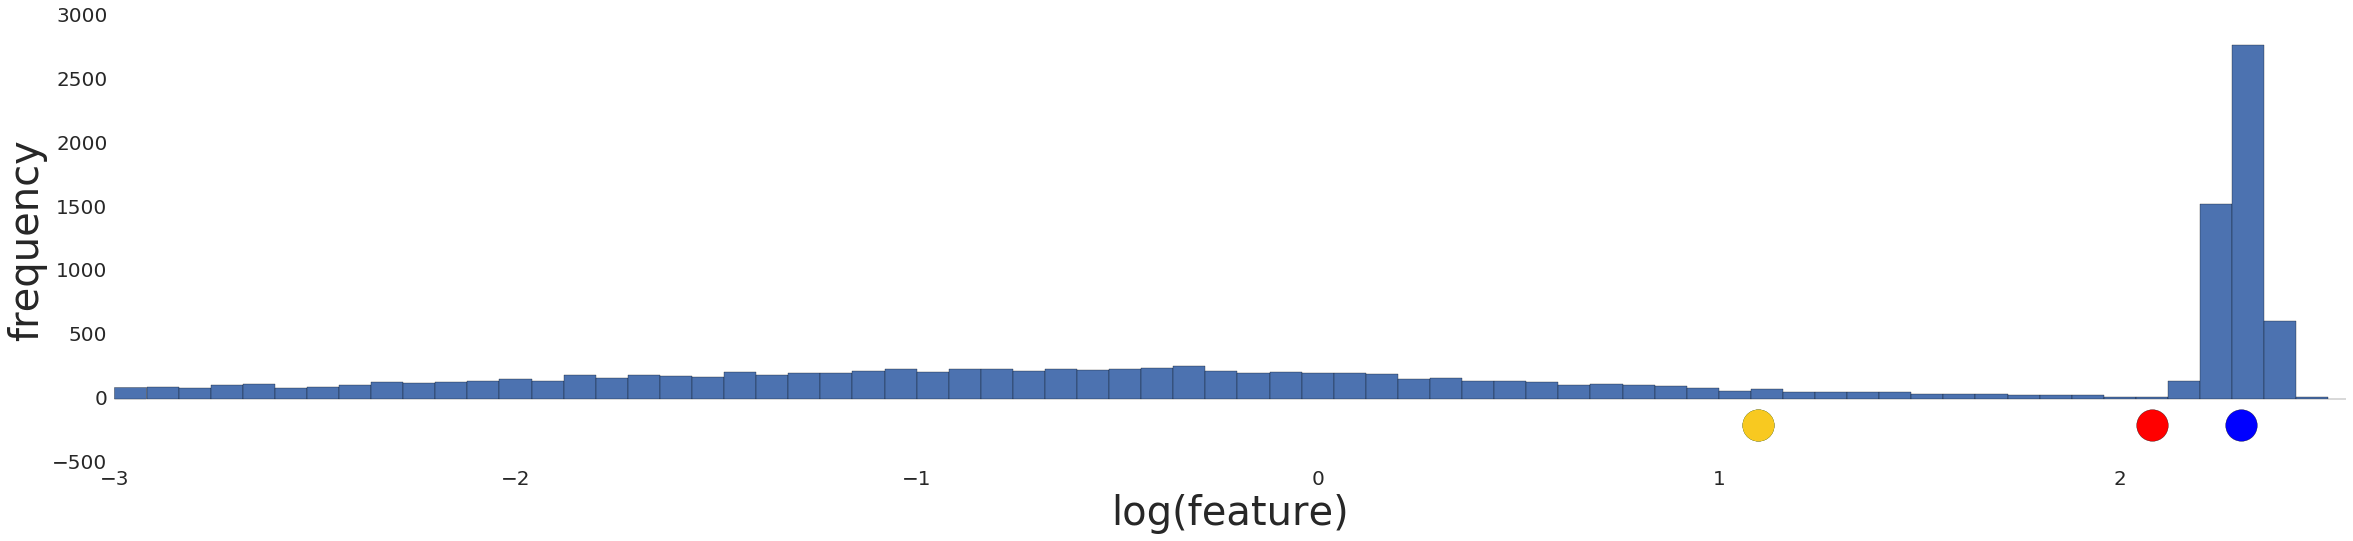 Grafik yang menunjukkan distribusi data setelah transformasi log